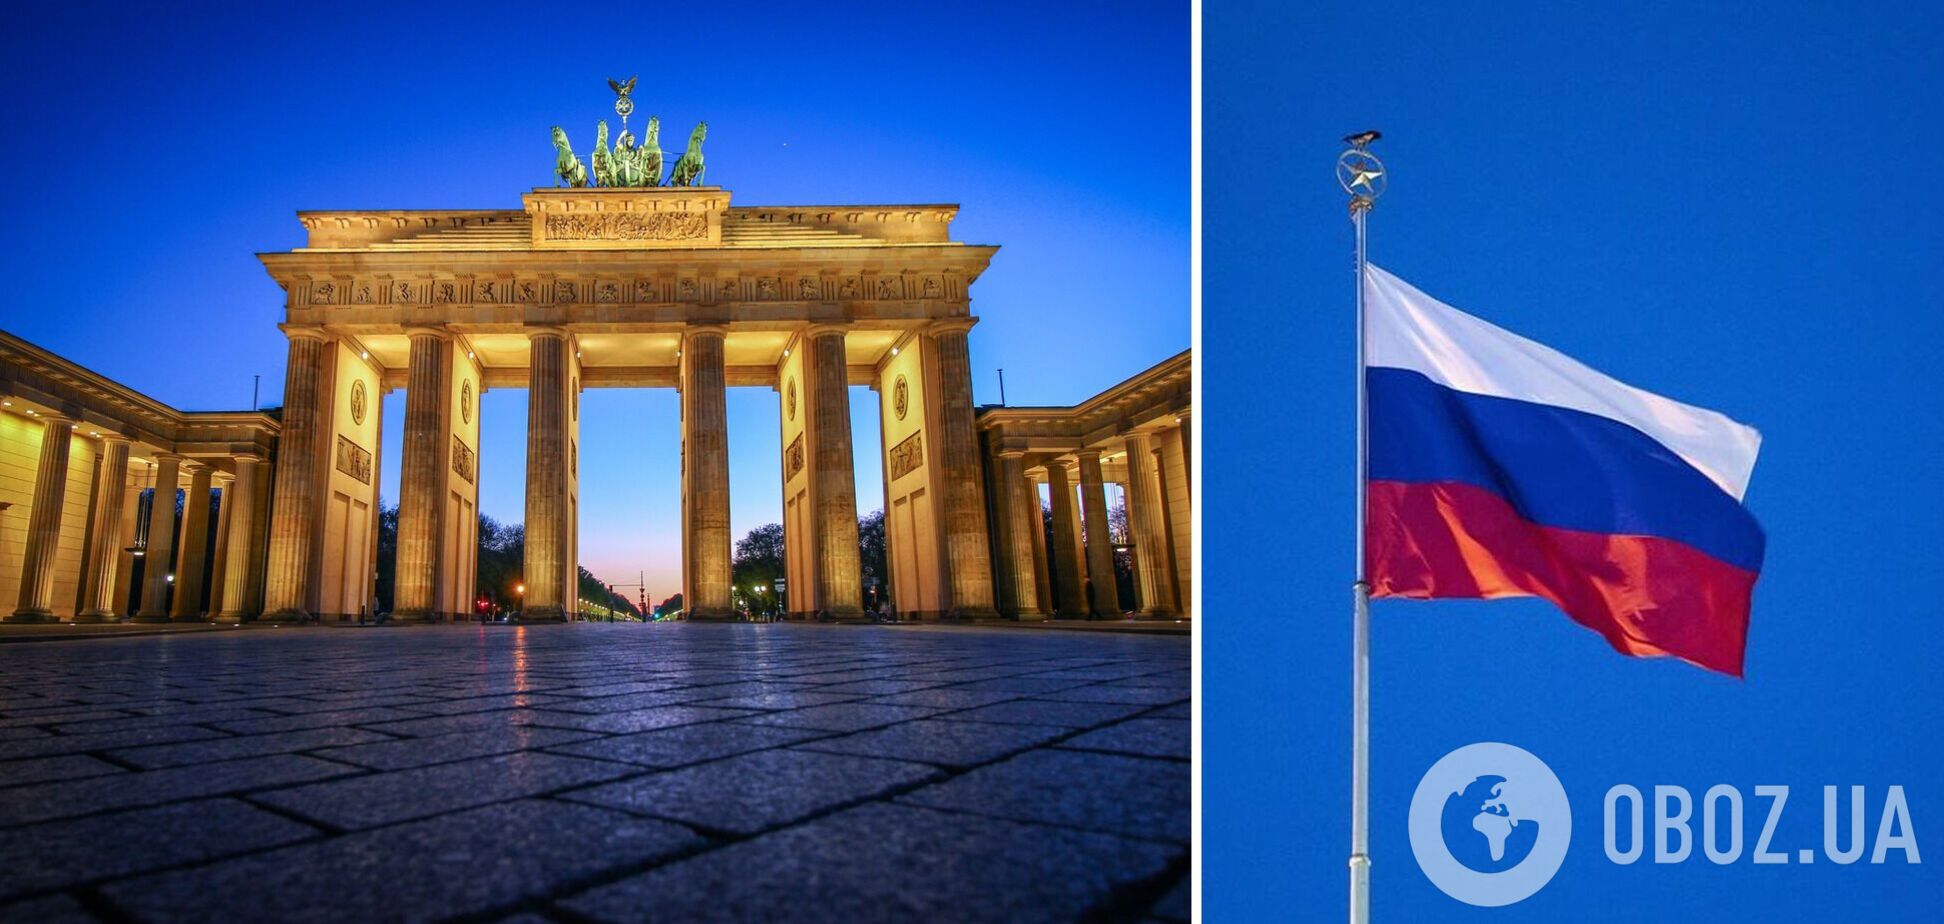 Німецький суд хоче скасувати заборону на демонстрацію прапорів РФ 9 травня, у поліції Берліна не згодні